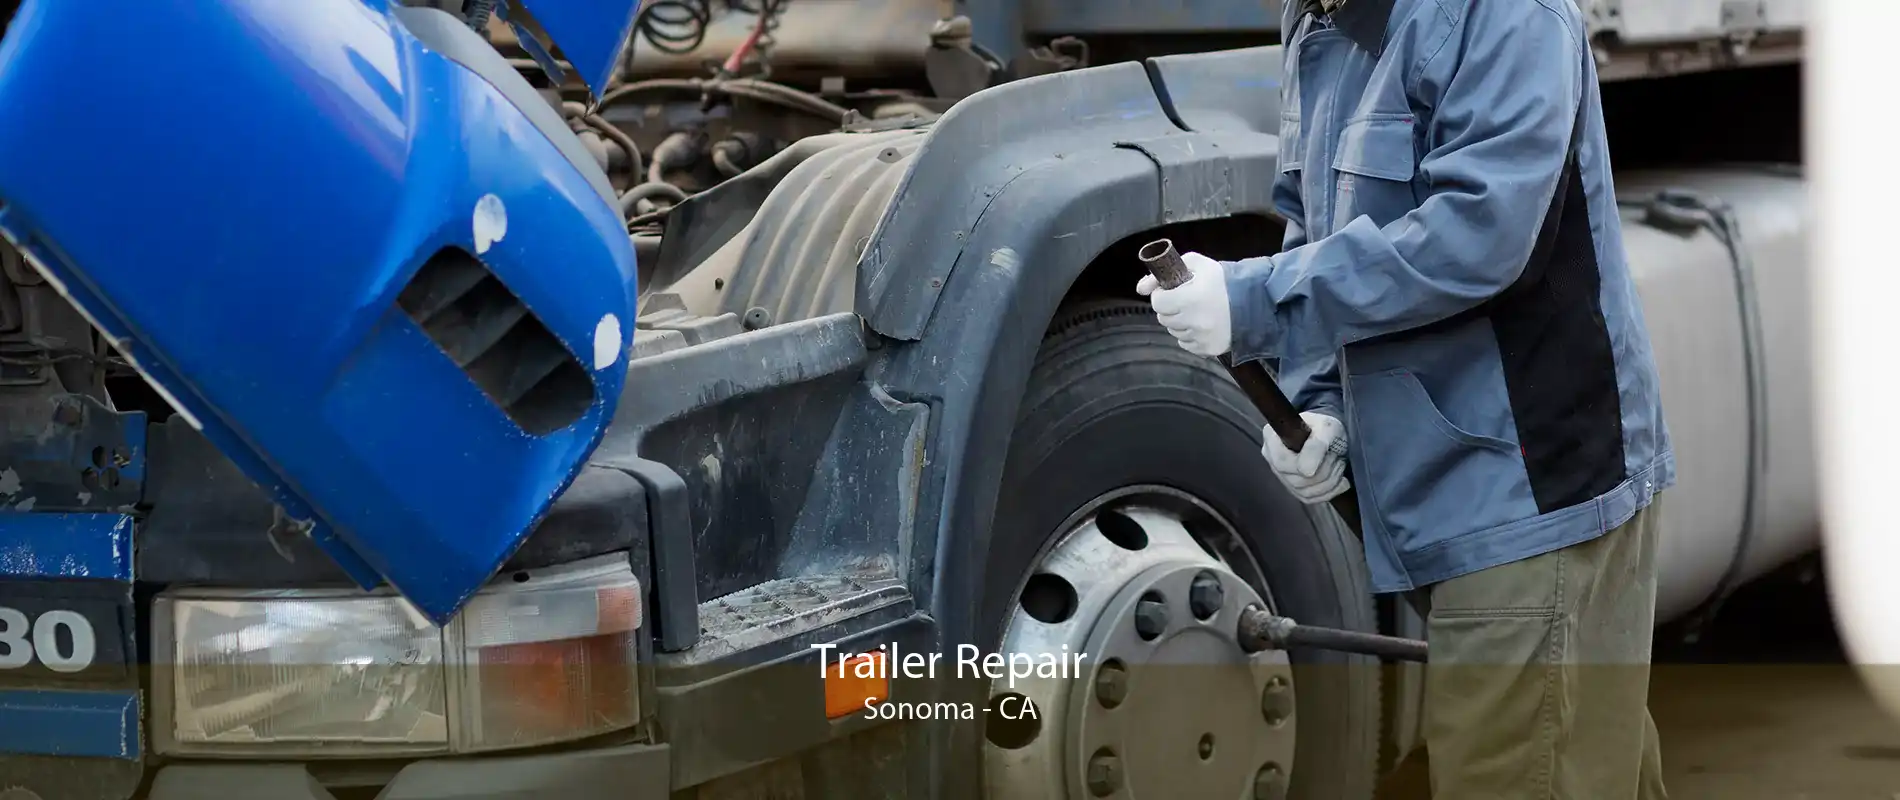 Trailer Repair Sonoma - CA